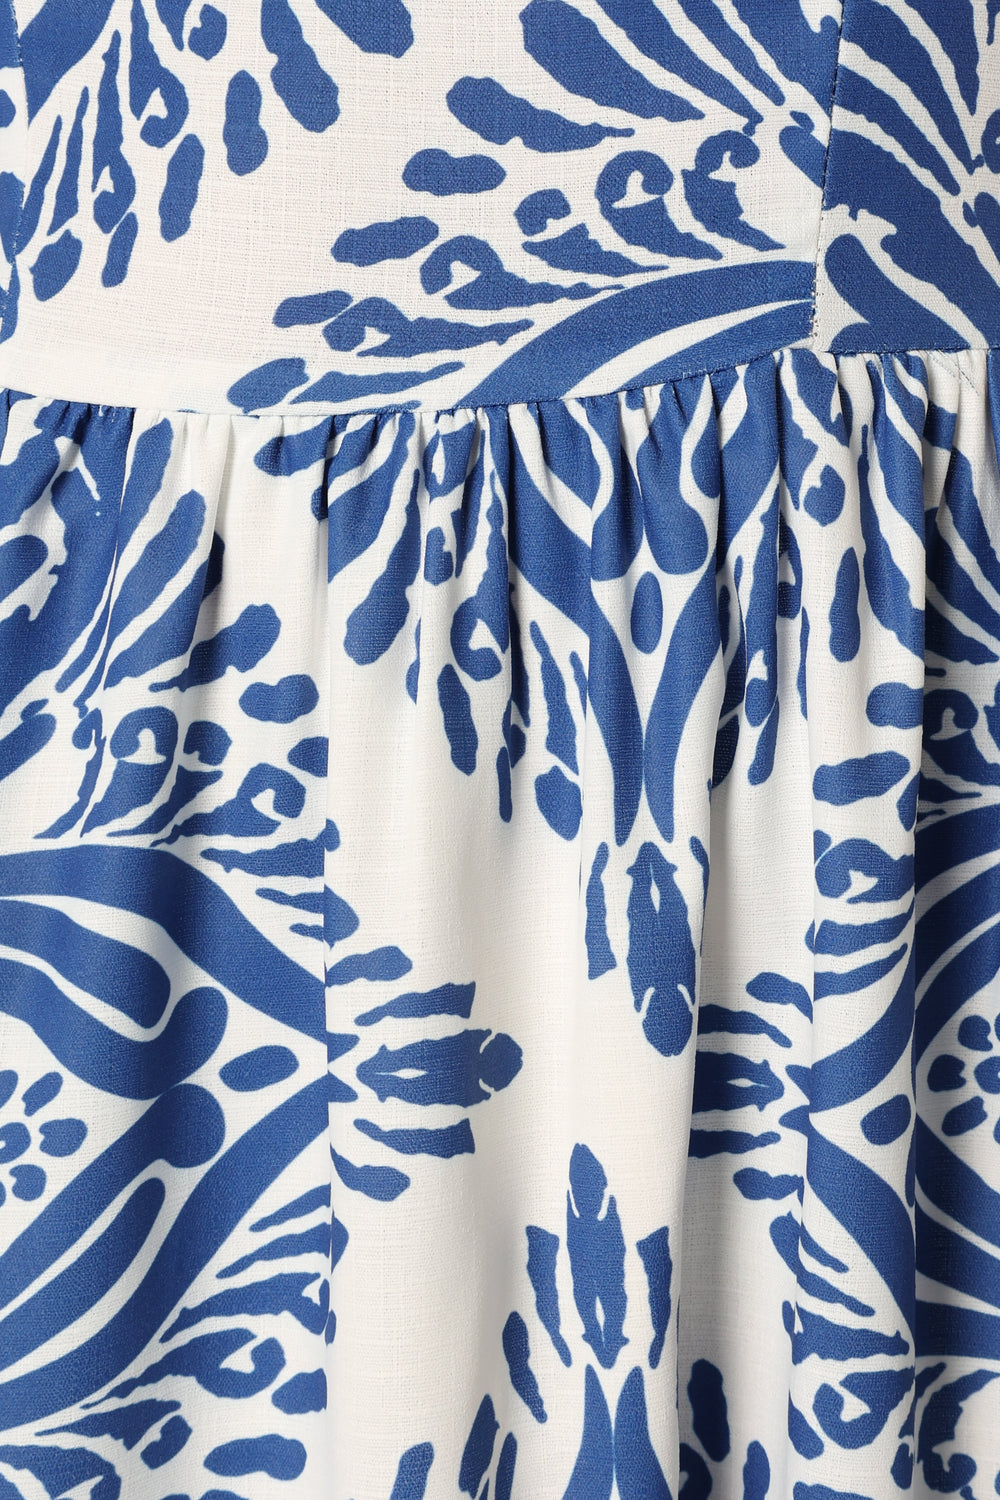 DRESSES @Stazie Midi Dress - Blue White Print